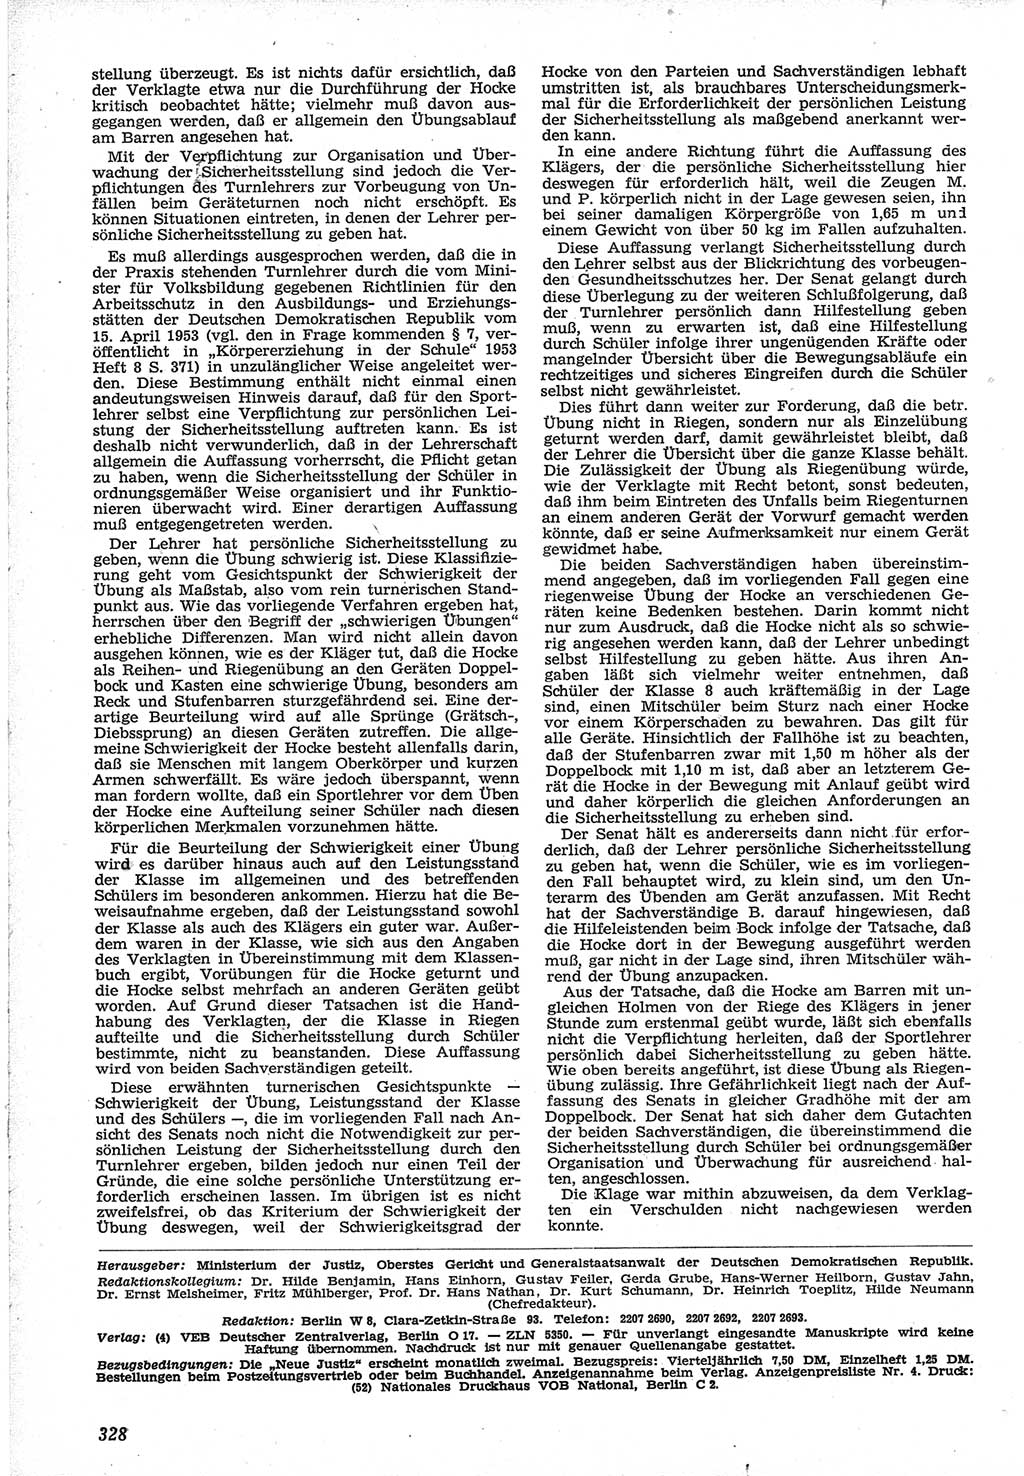 Neue Justiz (NJ), Zeitschrift für Recht und Rechtswissenschaft [Deutsche Demokratische Republik (DDR)], 12. Jahrgang 1958, Seite 328 (NJ DDR 1958, S. 328)